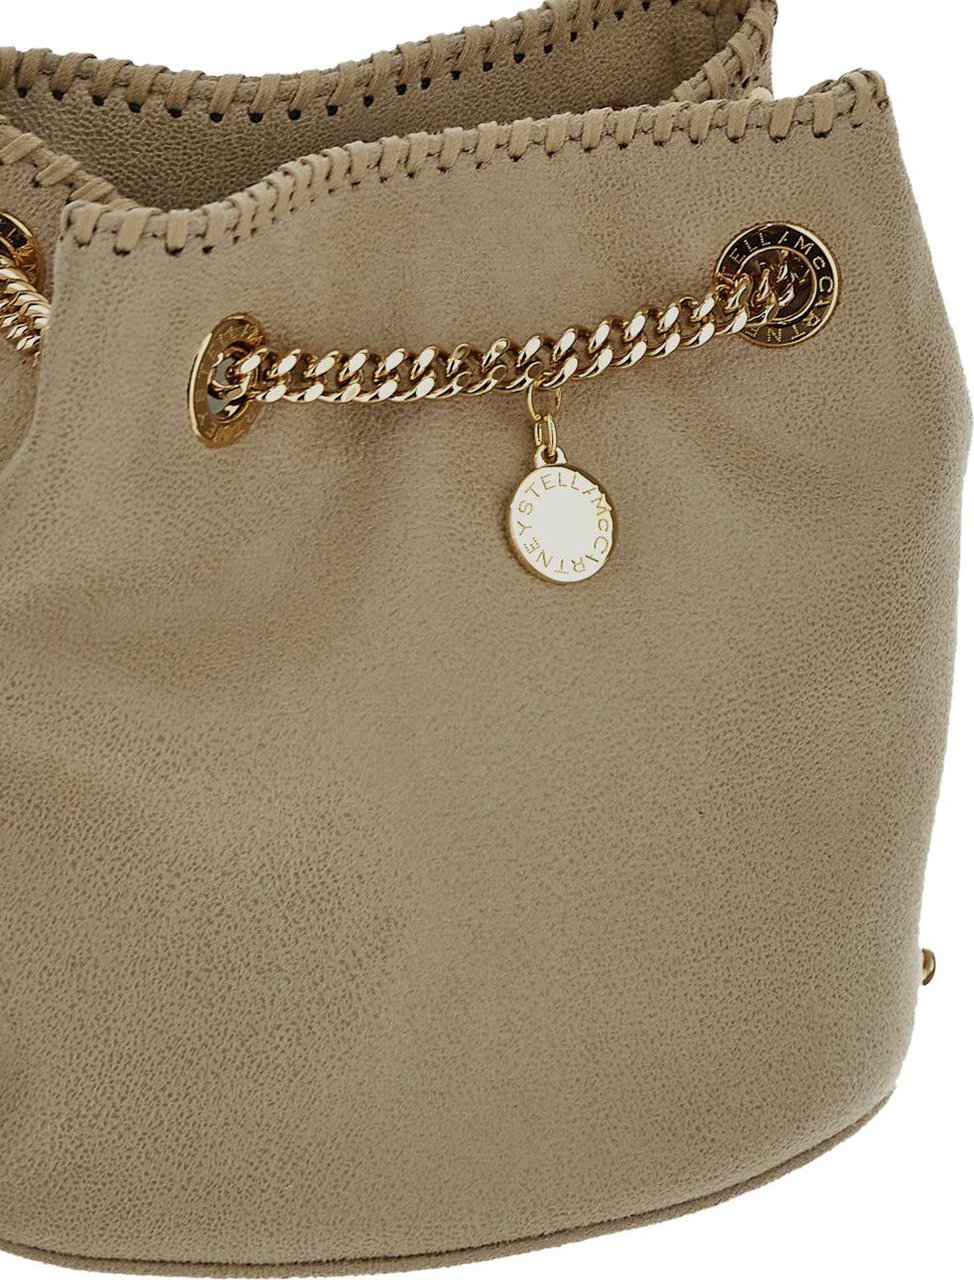 Stella McCartney Chain Strap Bucket Bag Beige